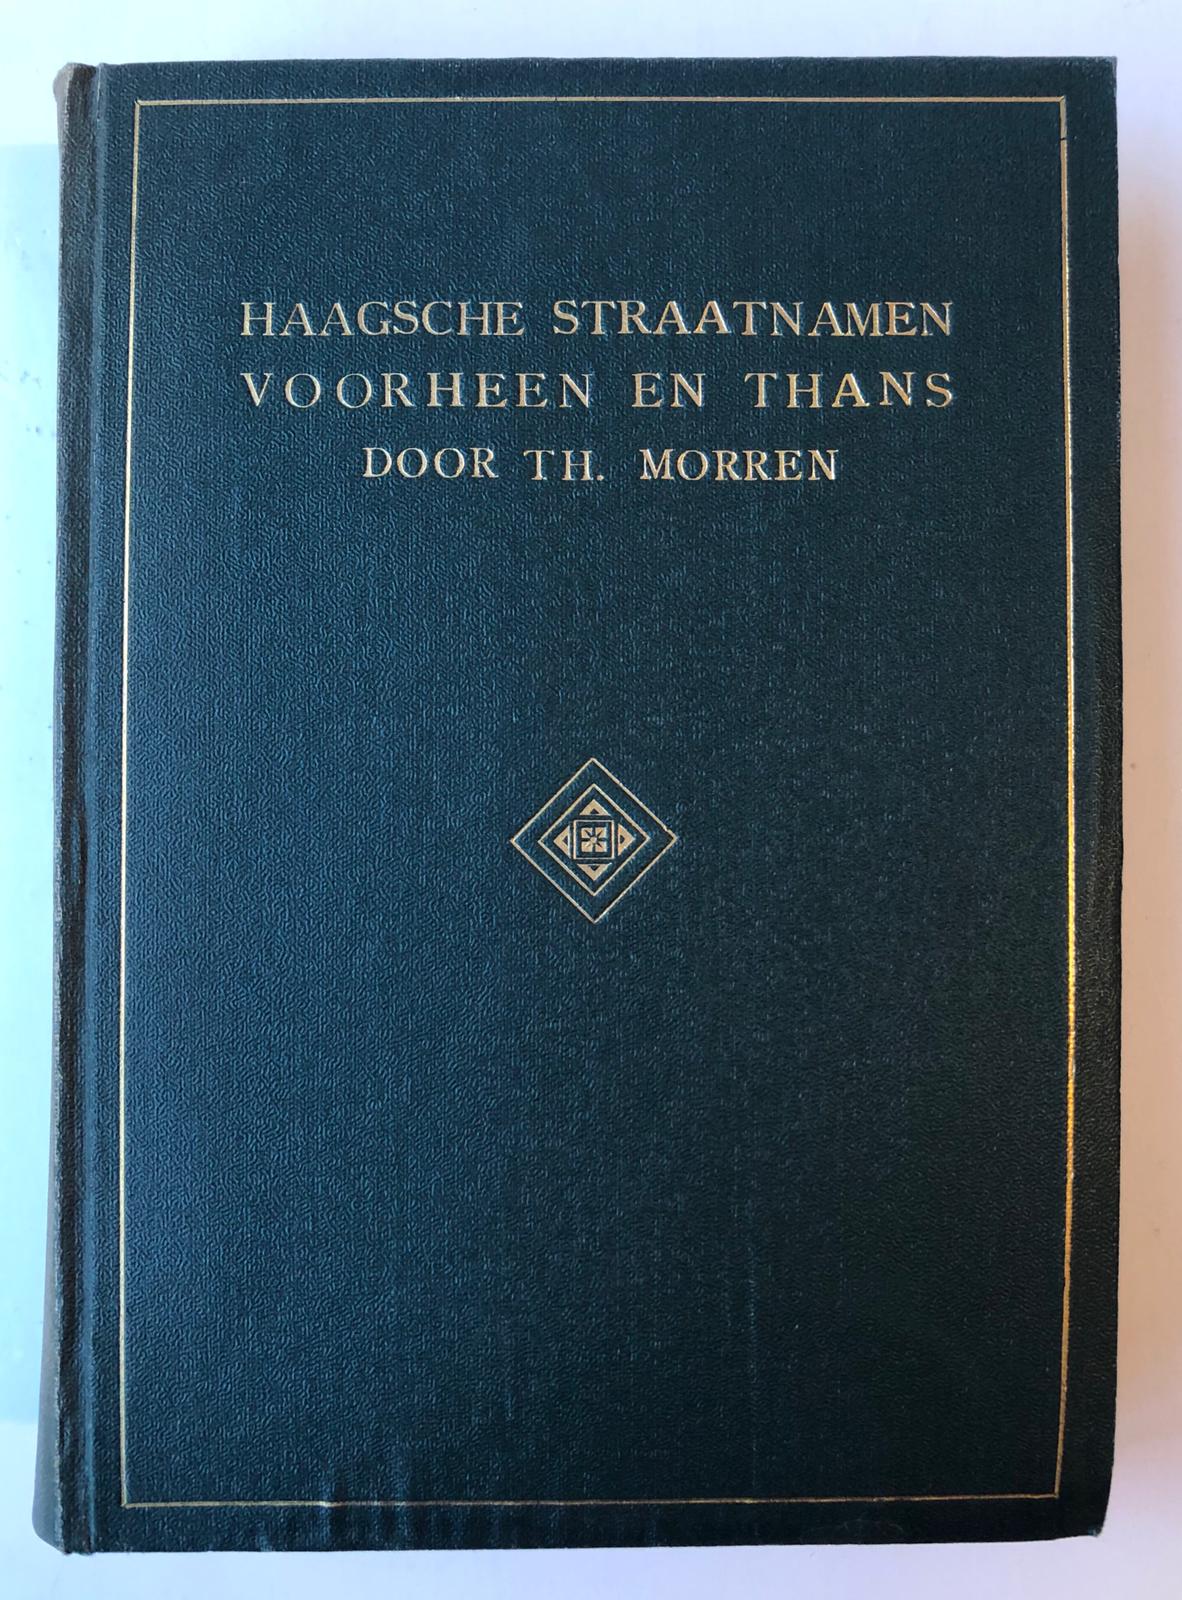 Haagsche straatnamen voorheen en thans, 's-Gravenhage 1912, 437 pag., geb., geïll. Rug iets verkleurd. Goed exemplaar.